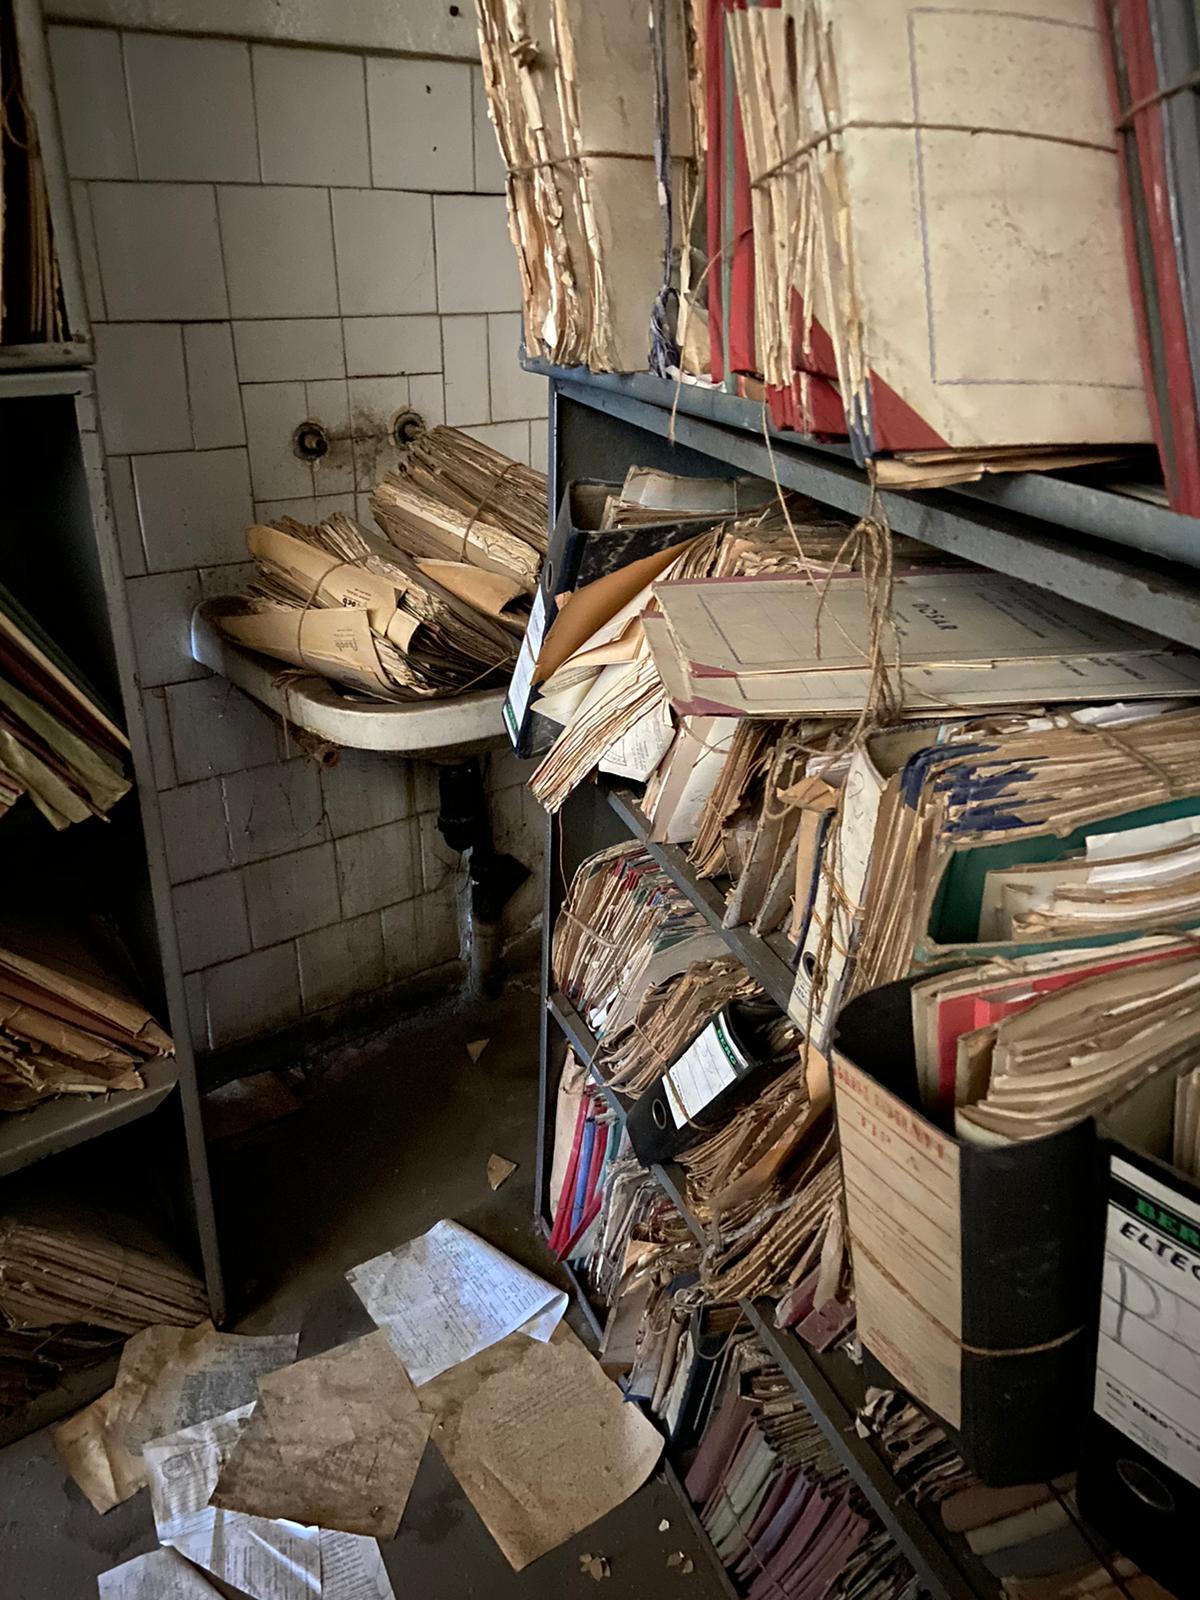 Dezastrul găsit într-o arhivă a Casei de Pensii Bucureşti. Dosarele sunt ținute în condiții mizere - Imaginea 4